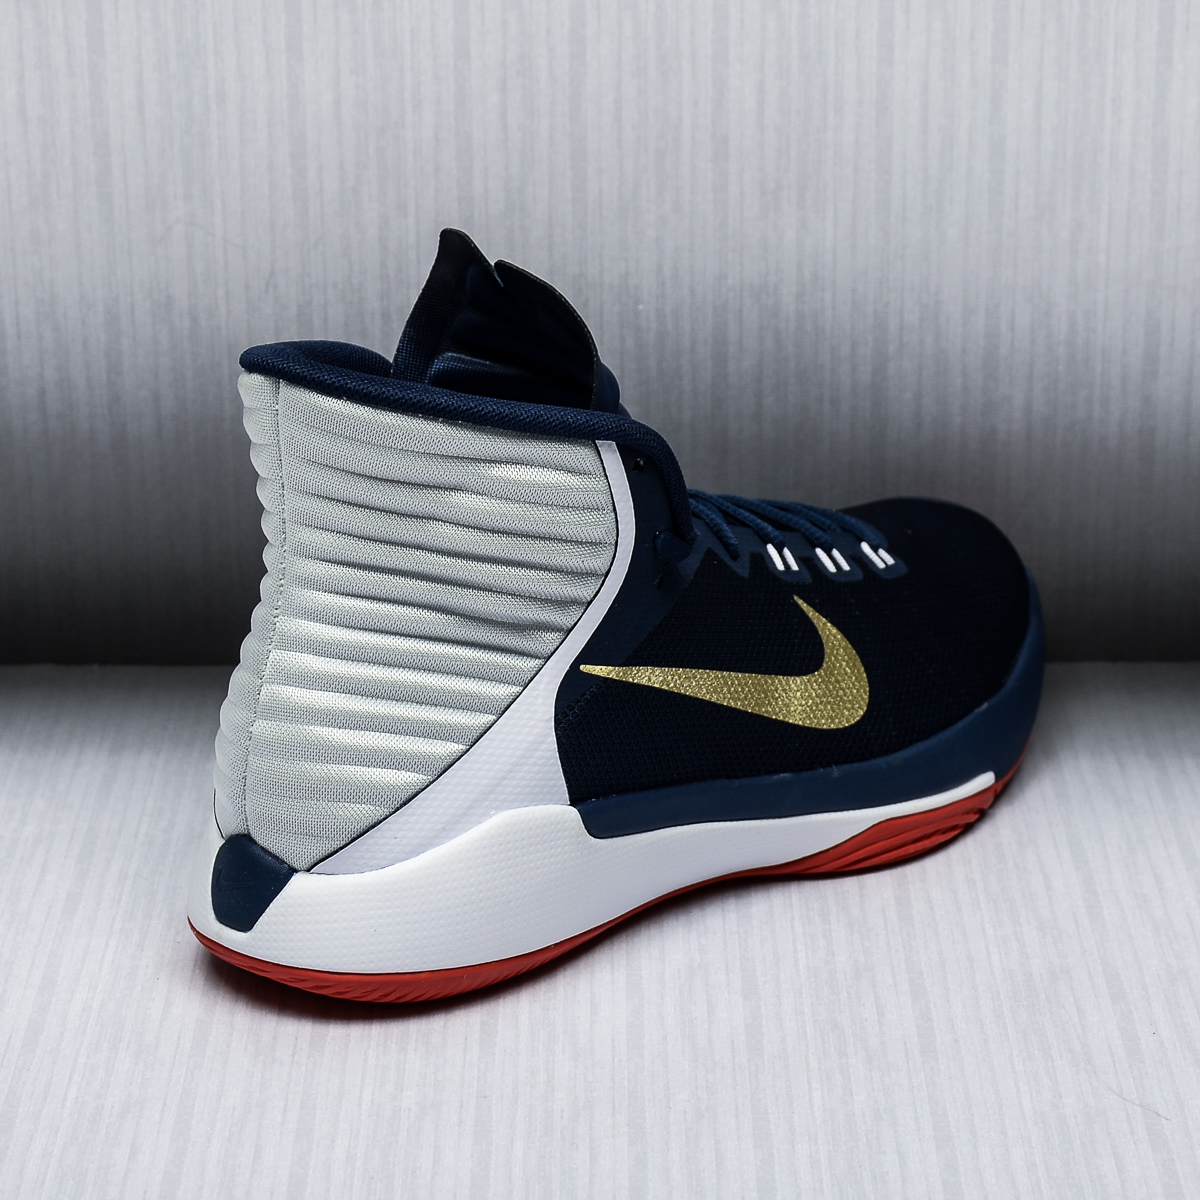  2016 Basketball Shoes  BASKETBALL SHOES NIKE Basketball shoes